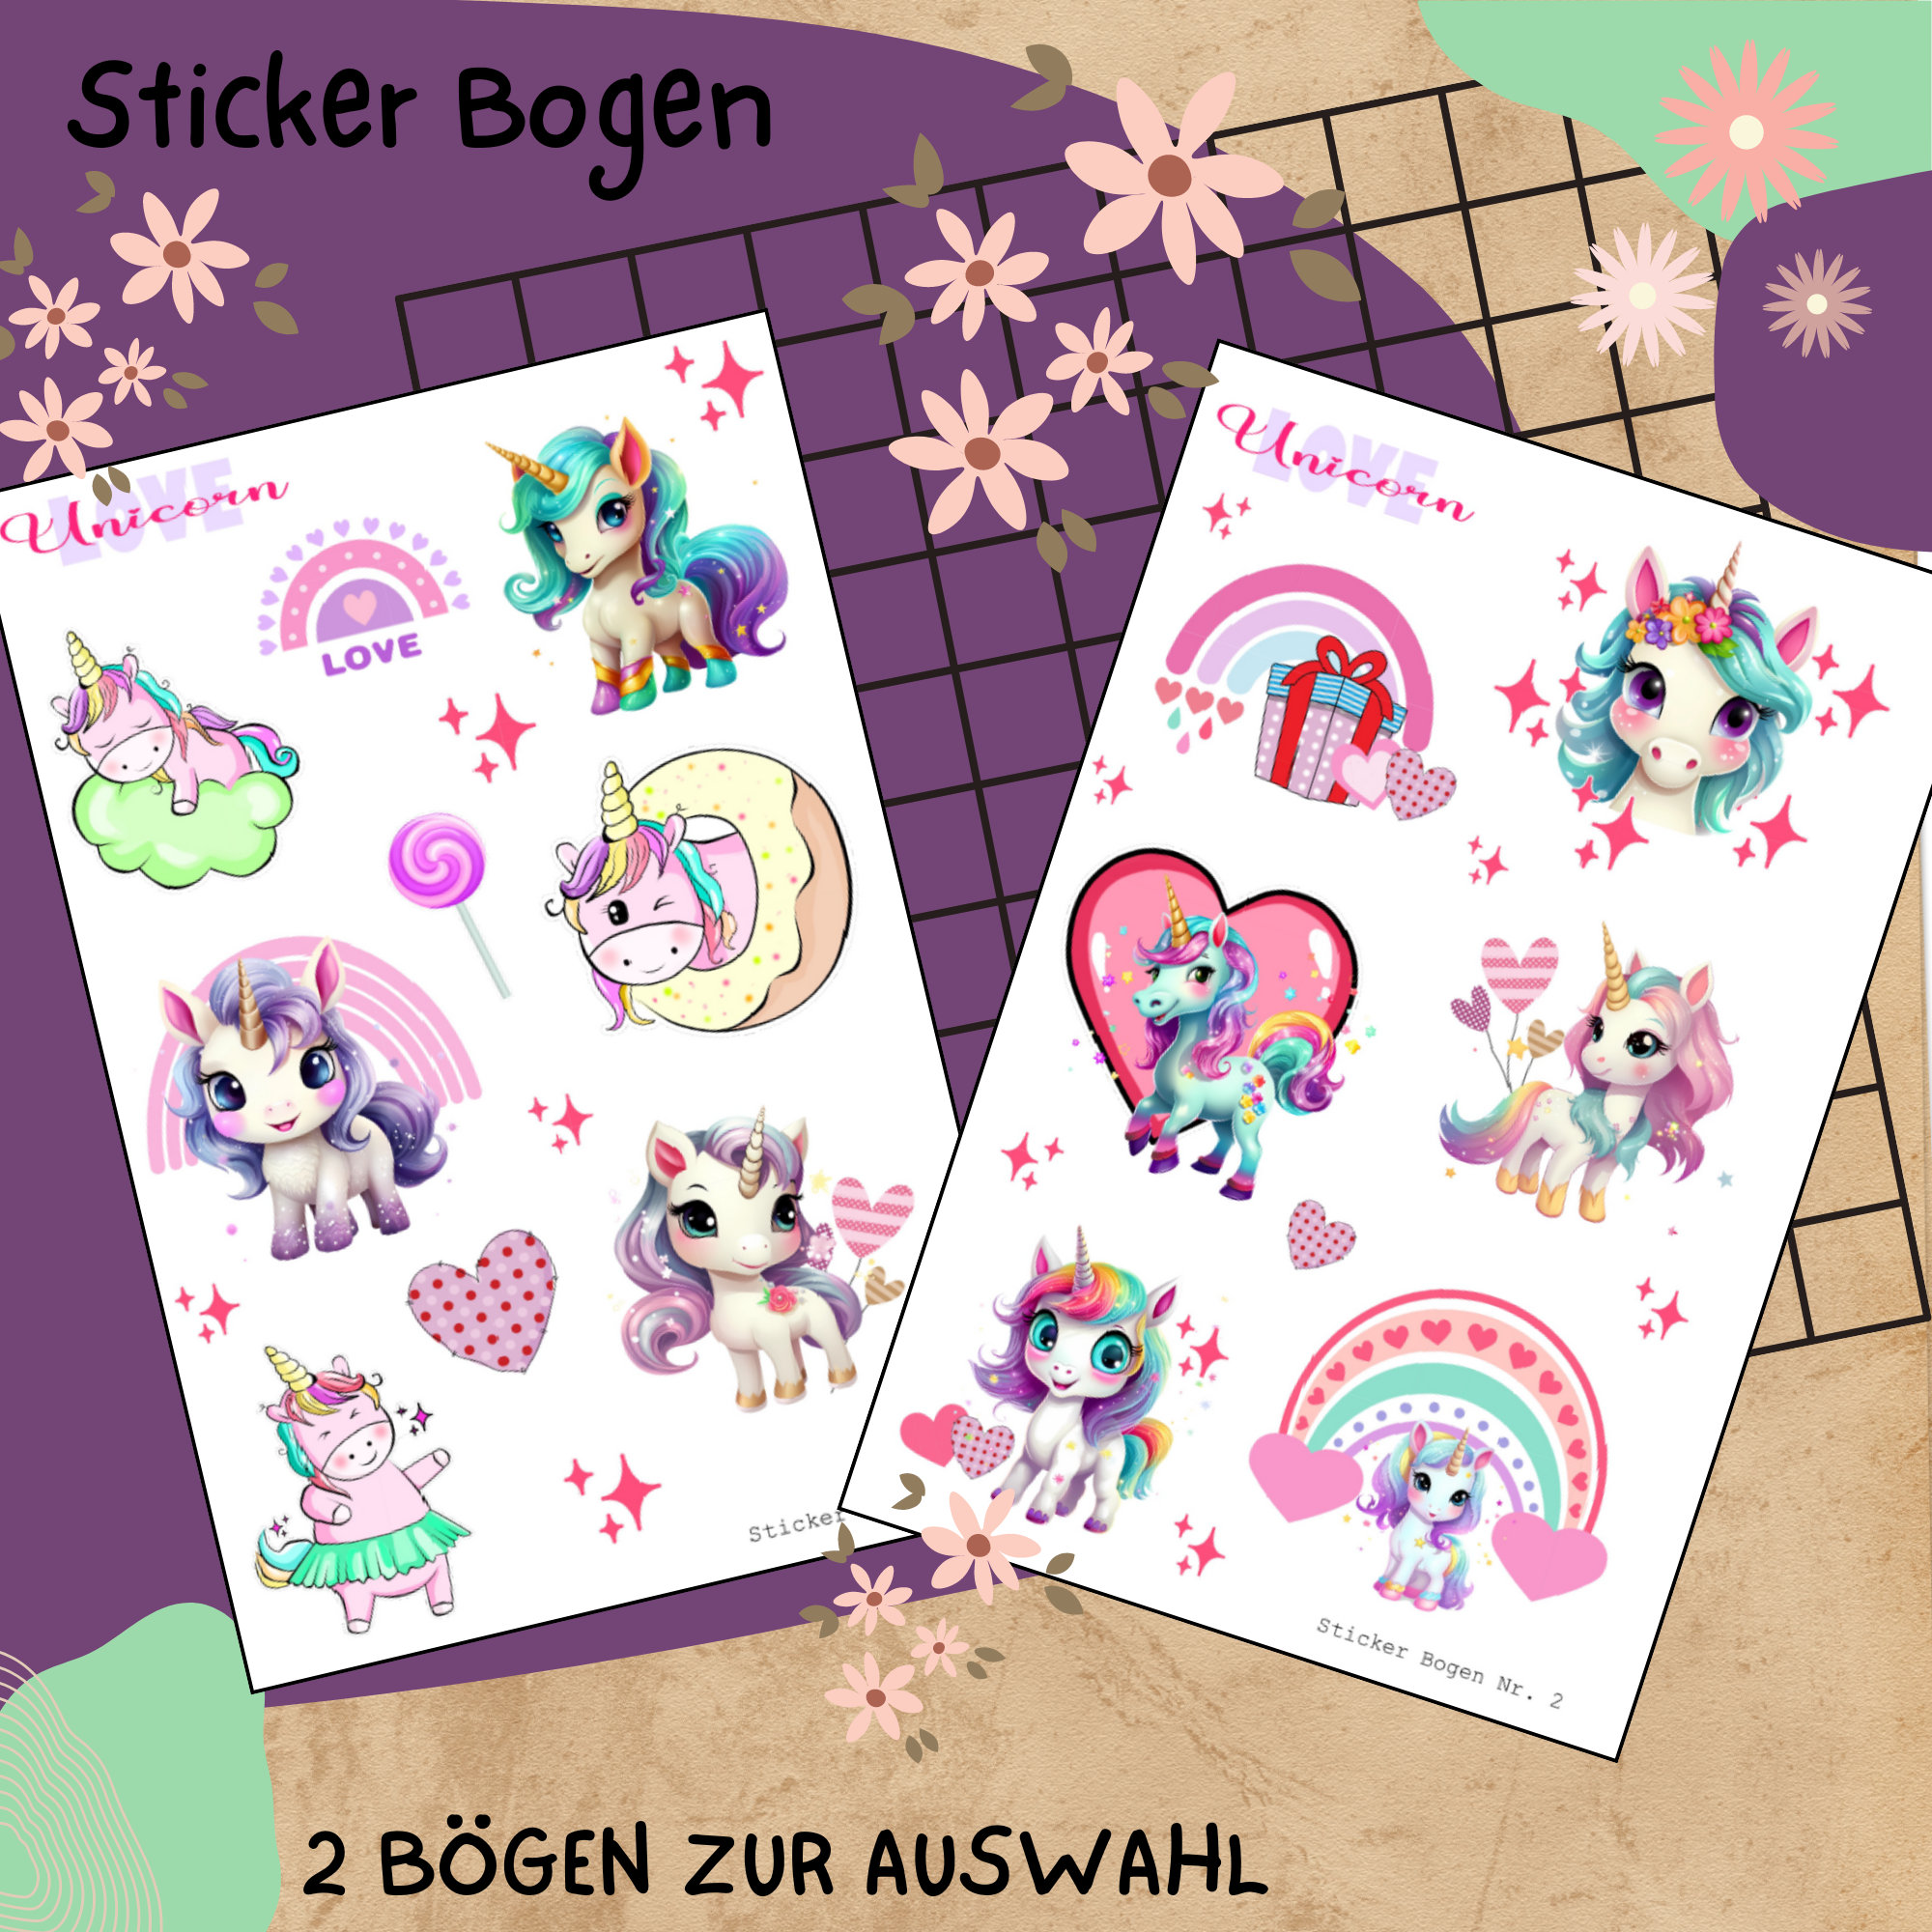 Sticker Bogen " Einhorn - Unicorn Love " | Sticker Set - Aufkleber 2 Stickerbogen zur Auswahl in Weiß - Transparent - Matt - Glanz